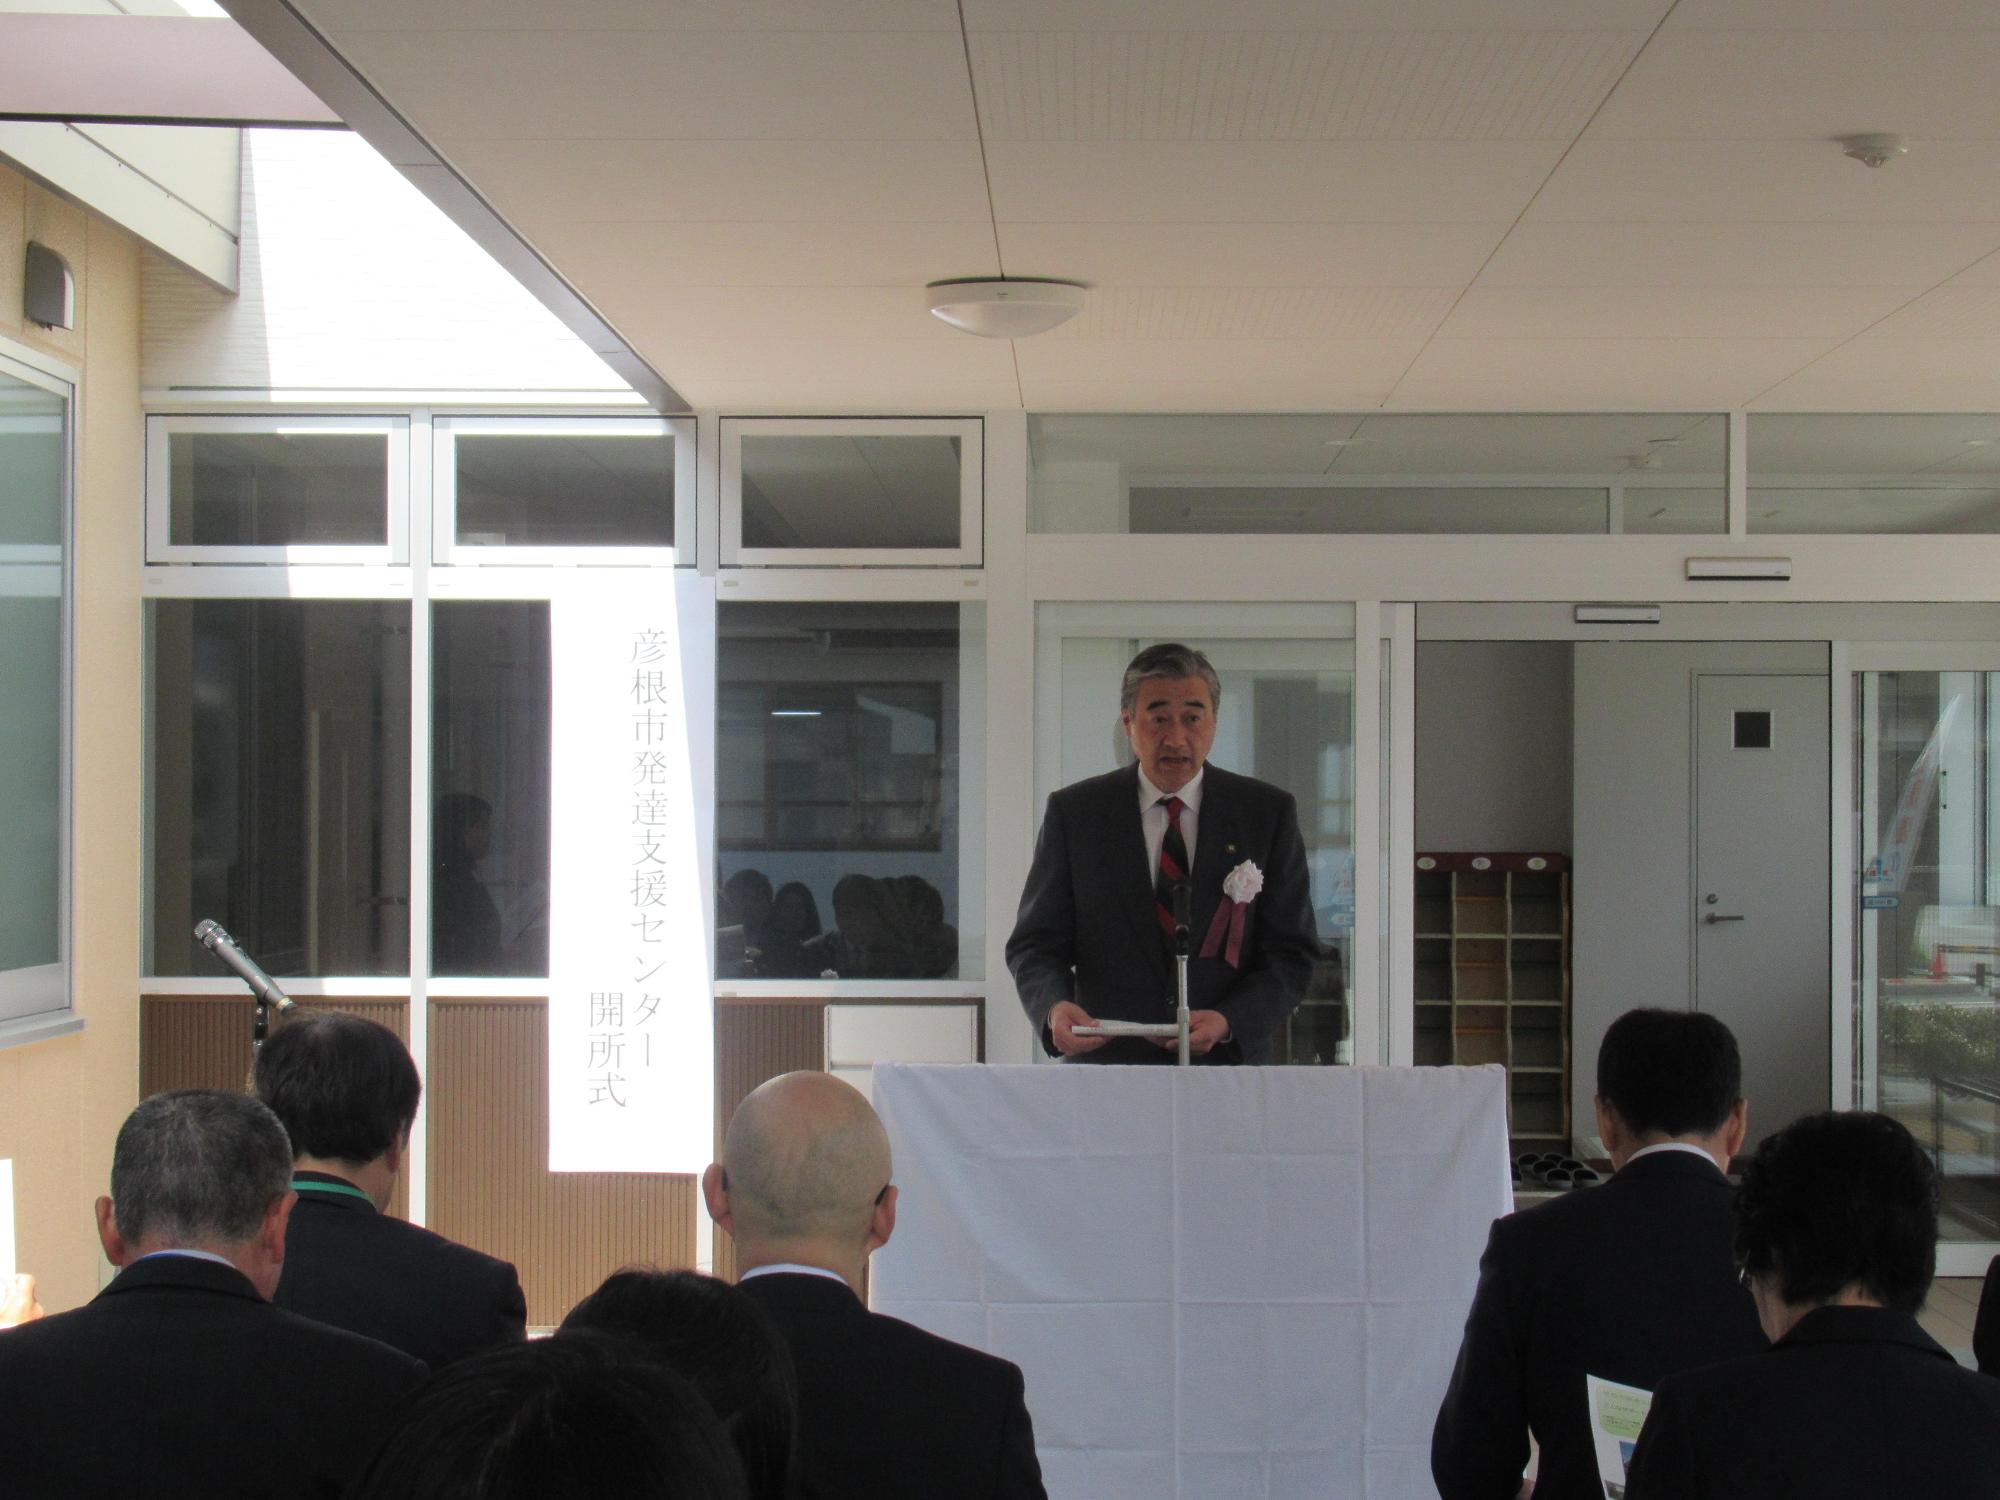 彦根市発達支援センター開所式であいさつをしている市長の写真